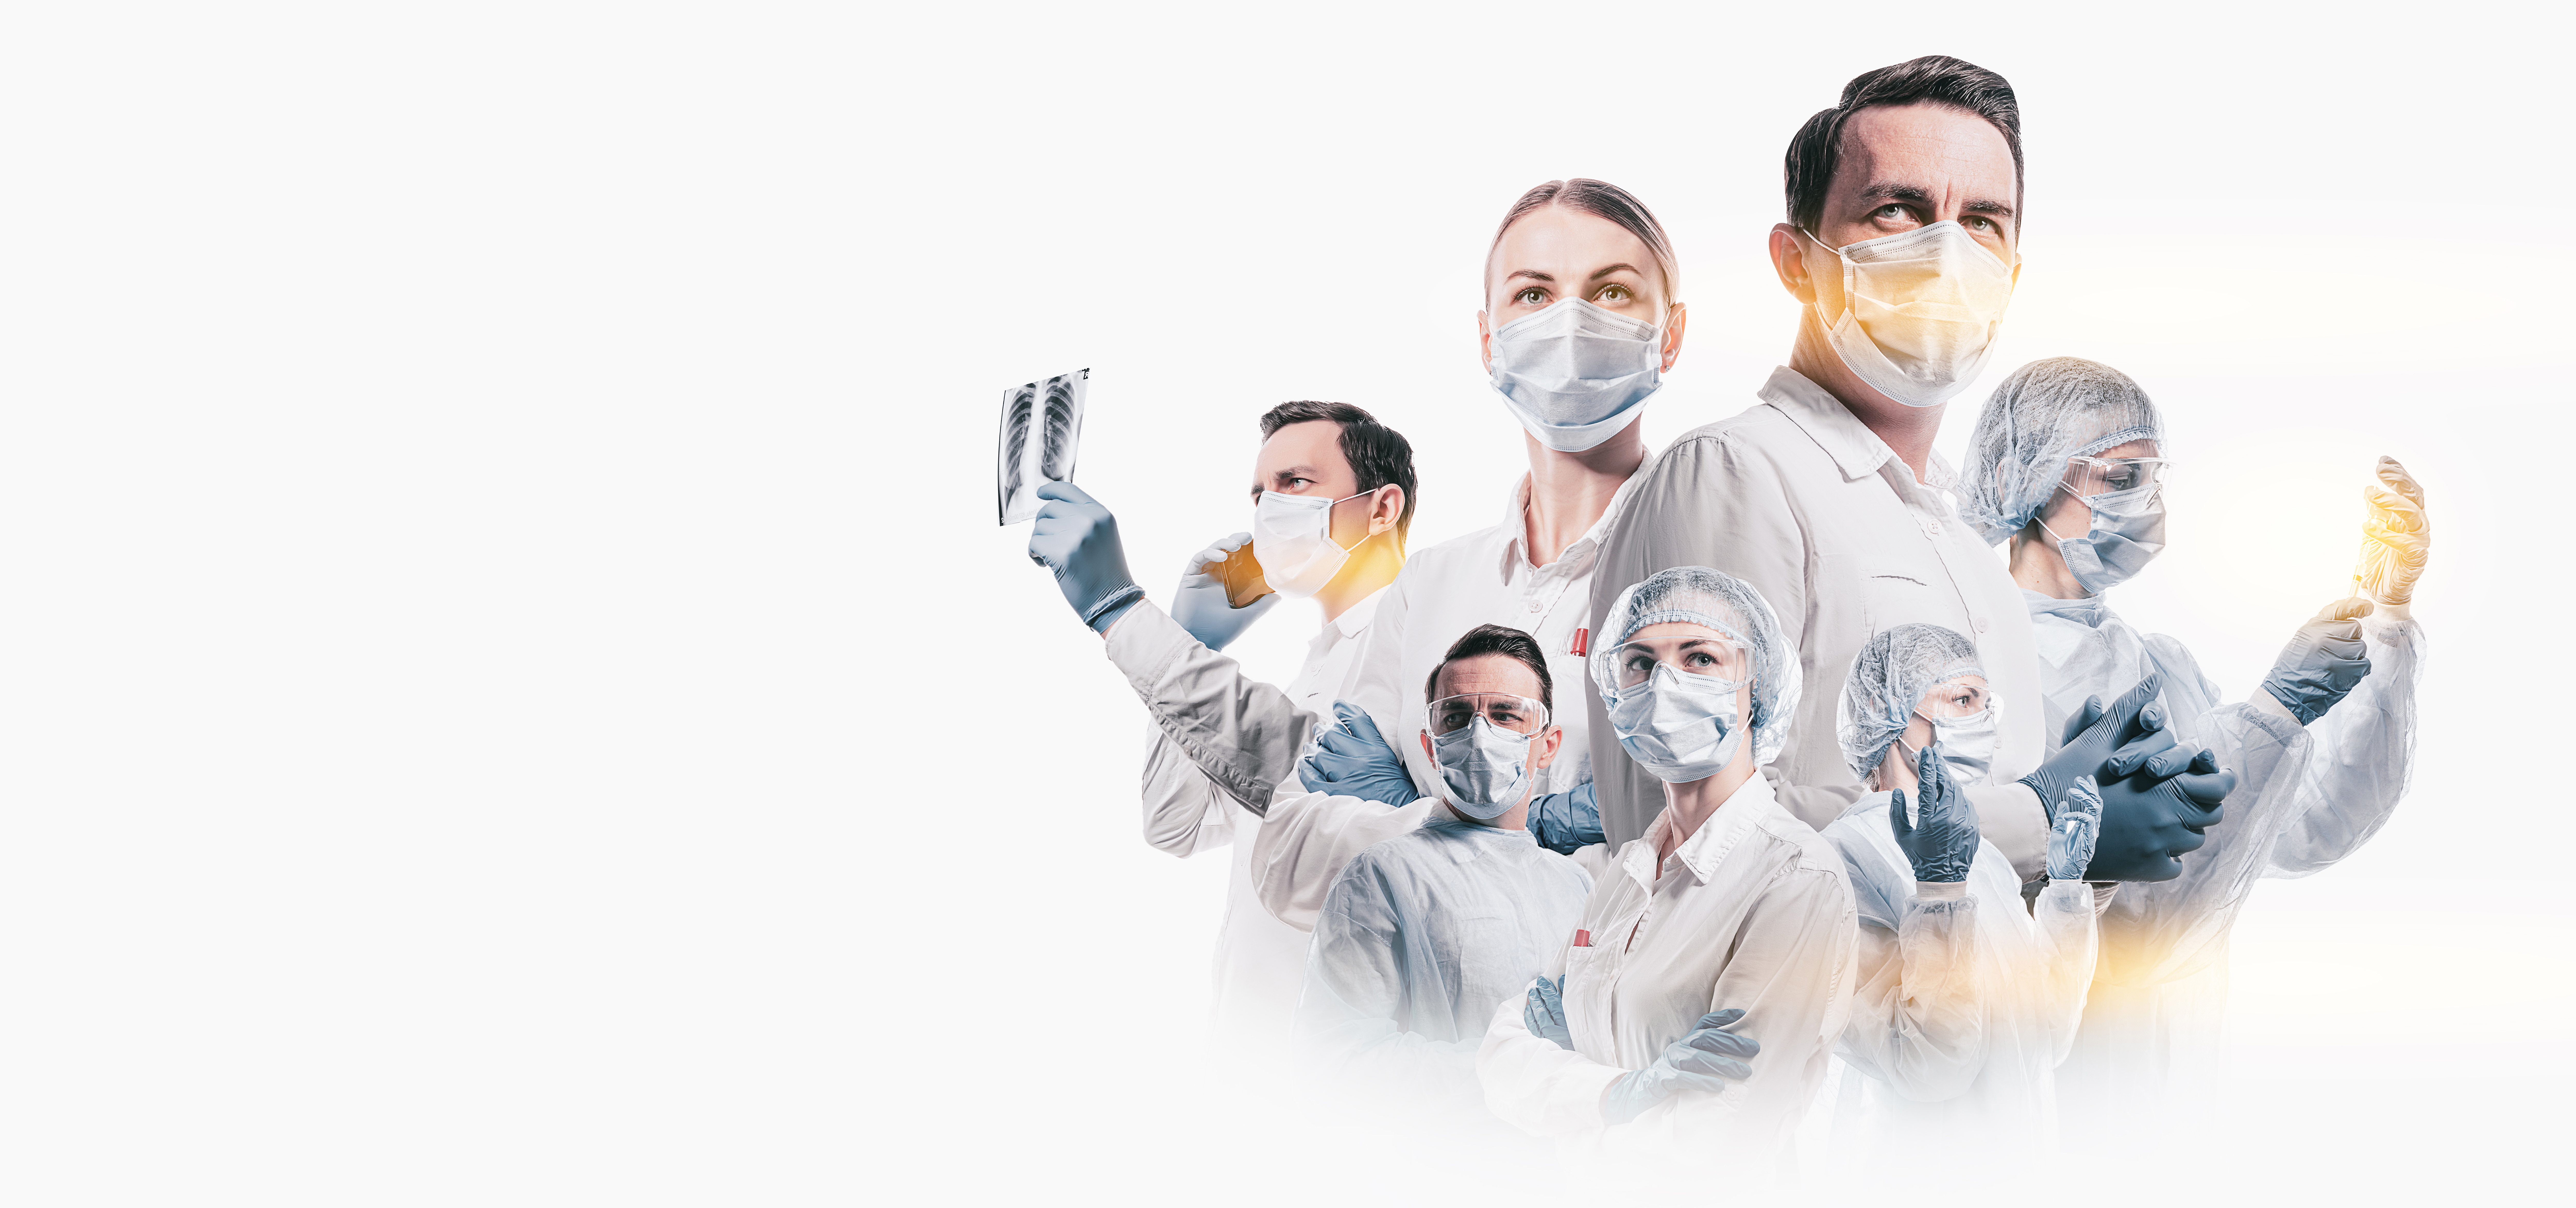 Una imagen de varios profesionales médicos | Foto: Shutterstock